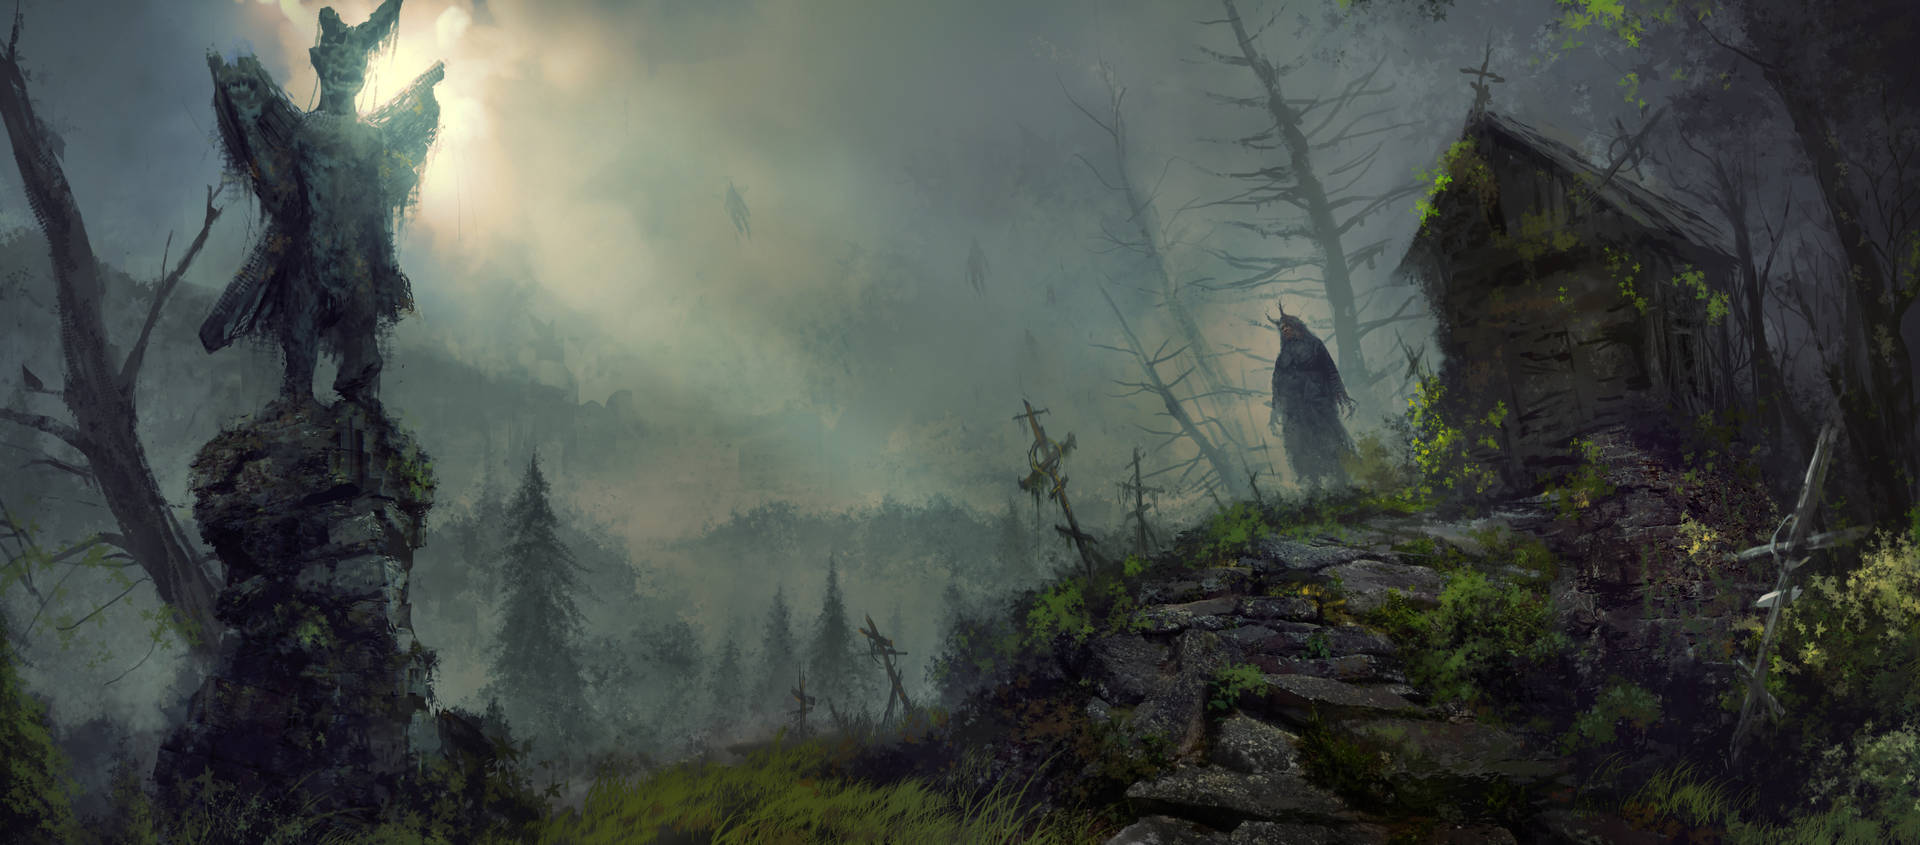 Diablo 4 Forest View Concept Art Wallpaper